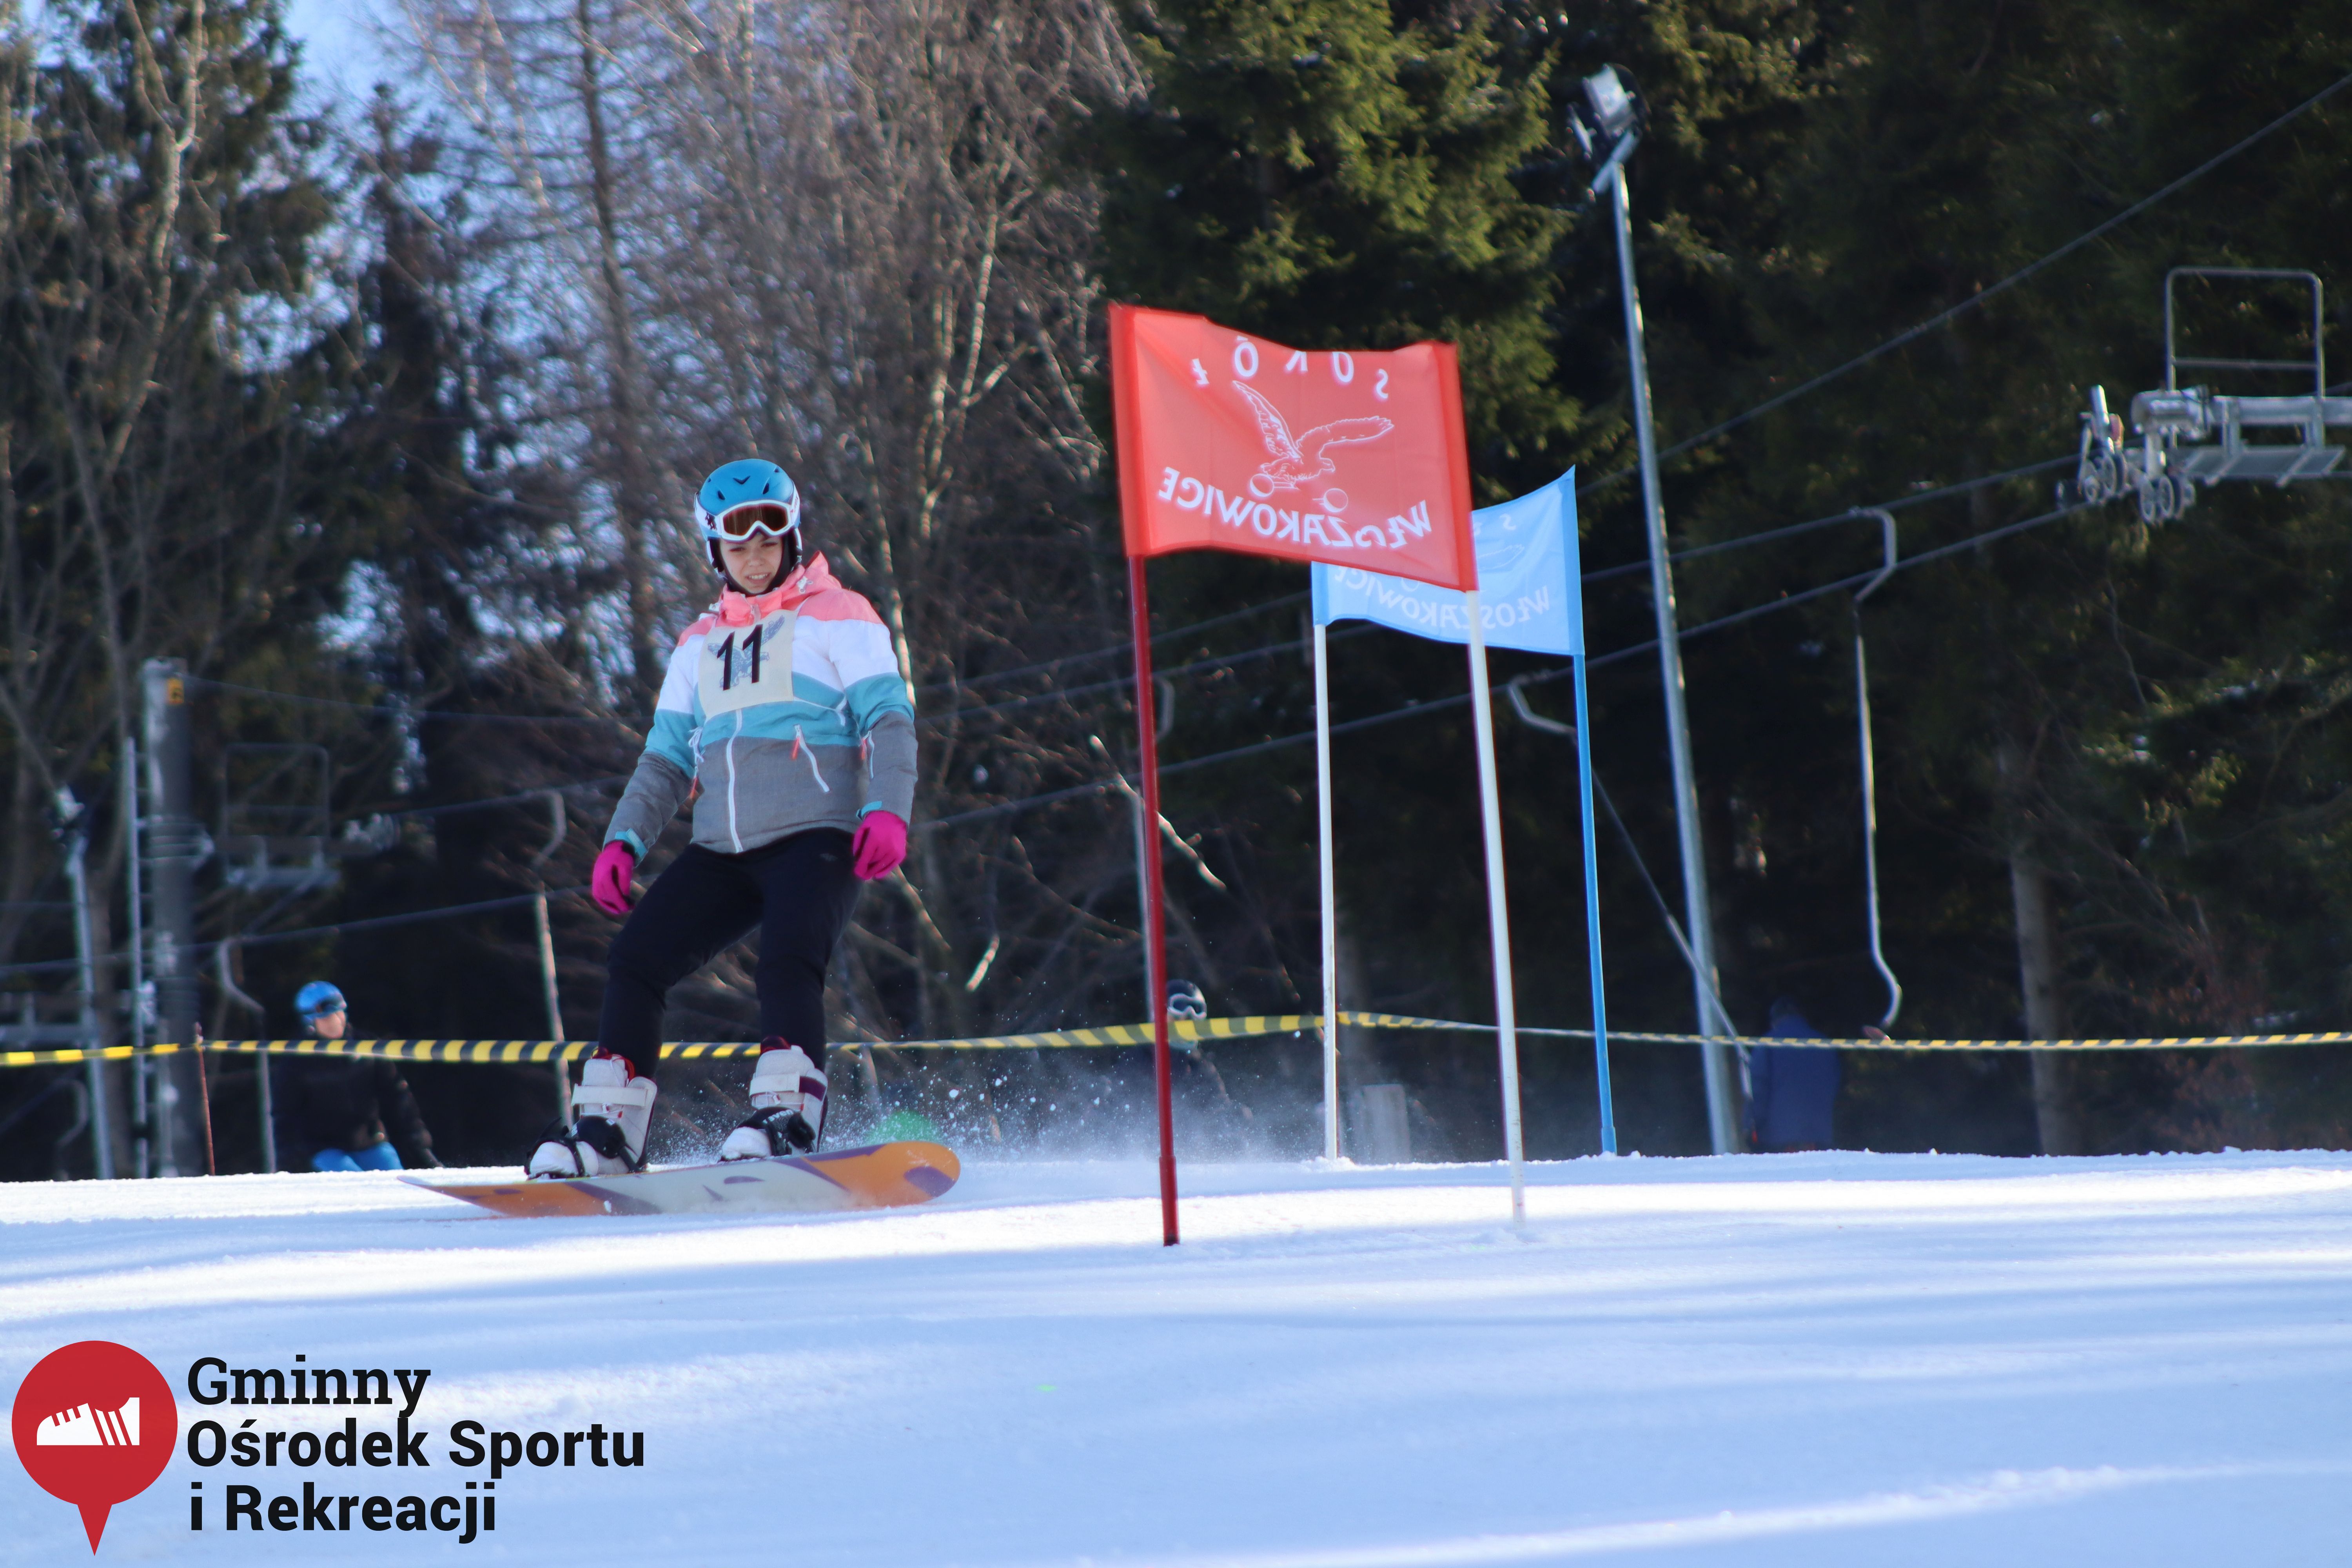 2022.02.12 - 18. Mistrzostwa Gminy Woszakowice w narciarstwie046.jpg - 1,65 MB